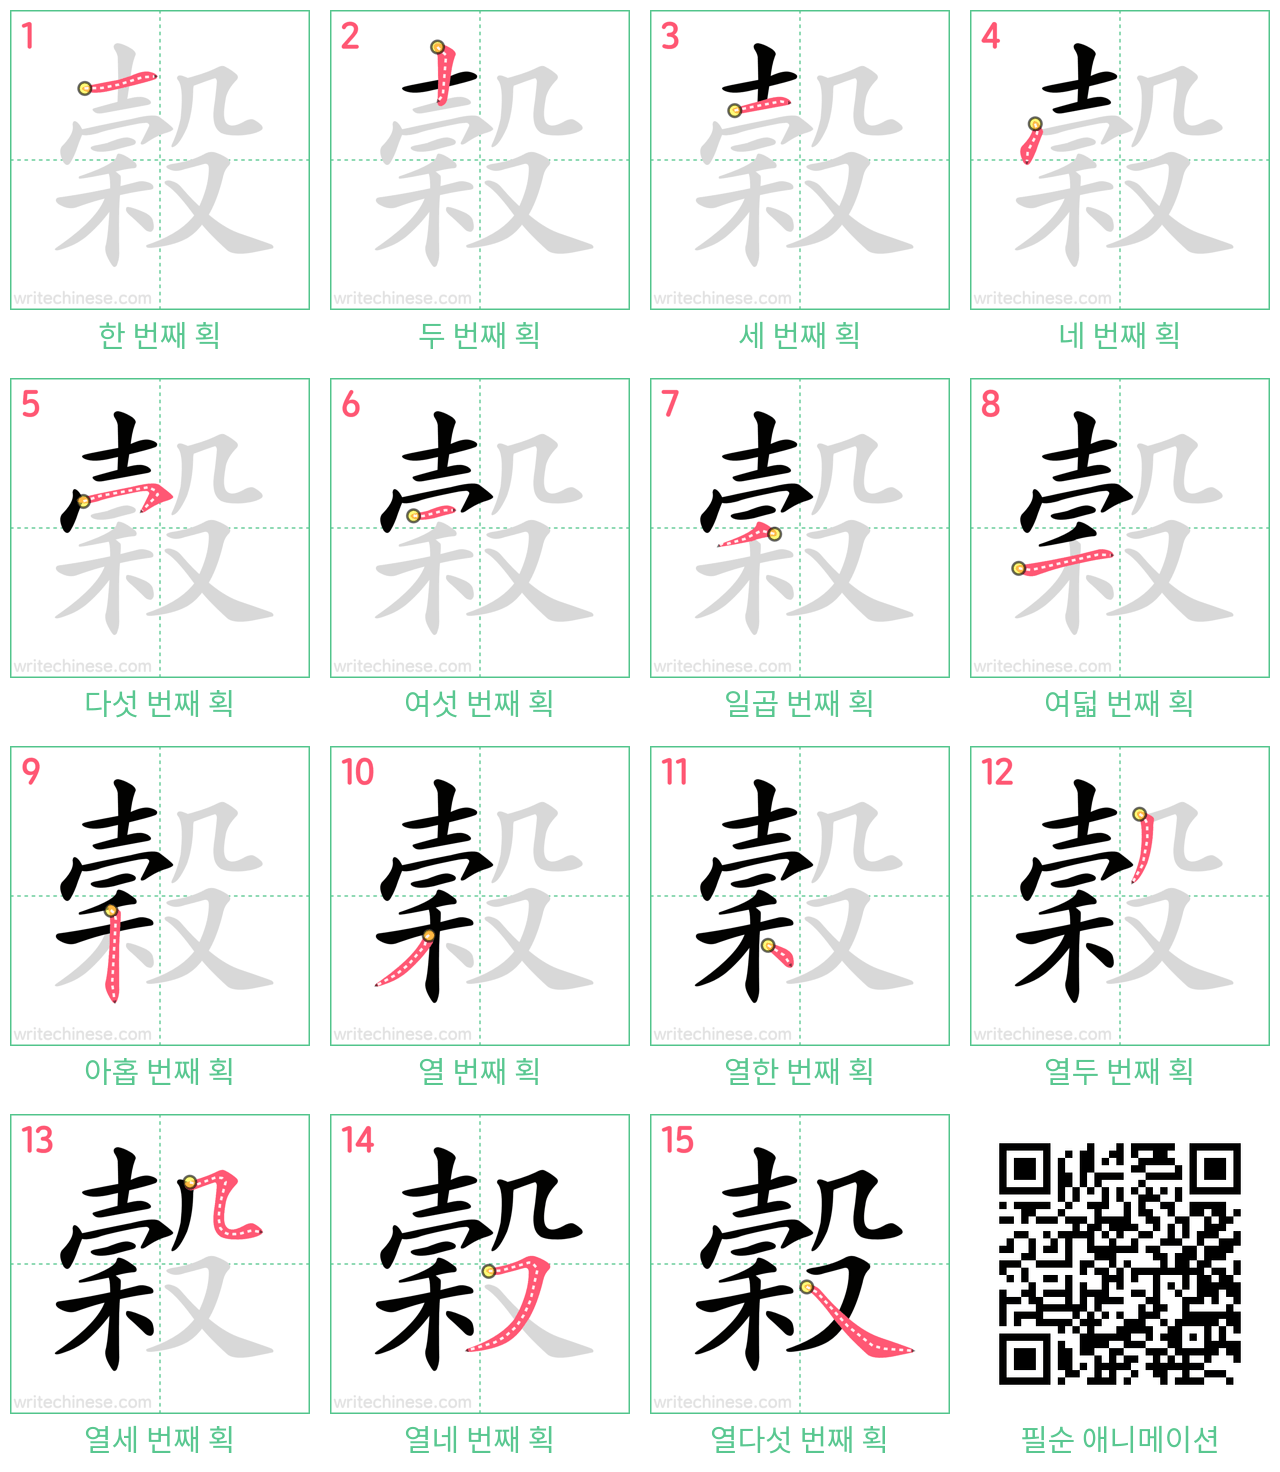 穀 step-by-step stroke order diagrams